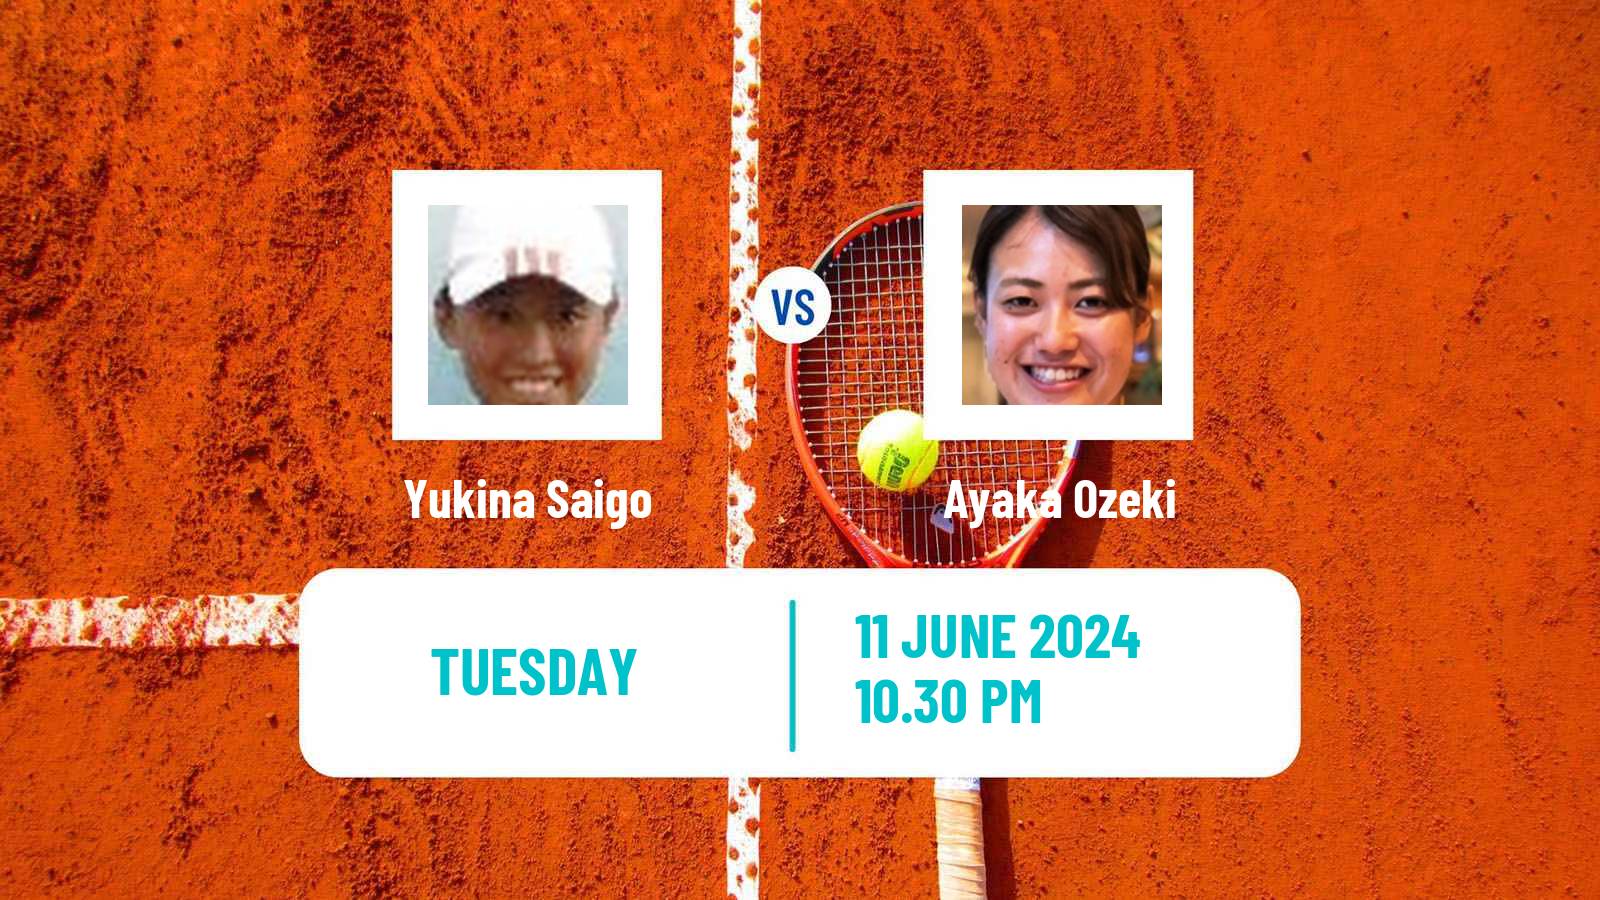 Tennis ITF W15 Tokyo 2 Women Yukina Saigo - Ayaka Ozeki